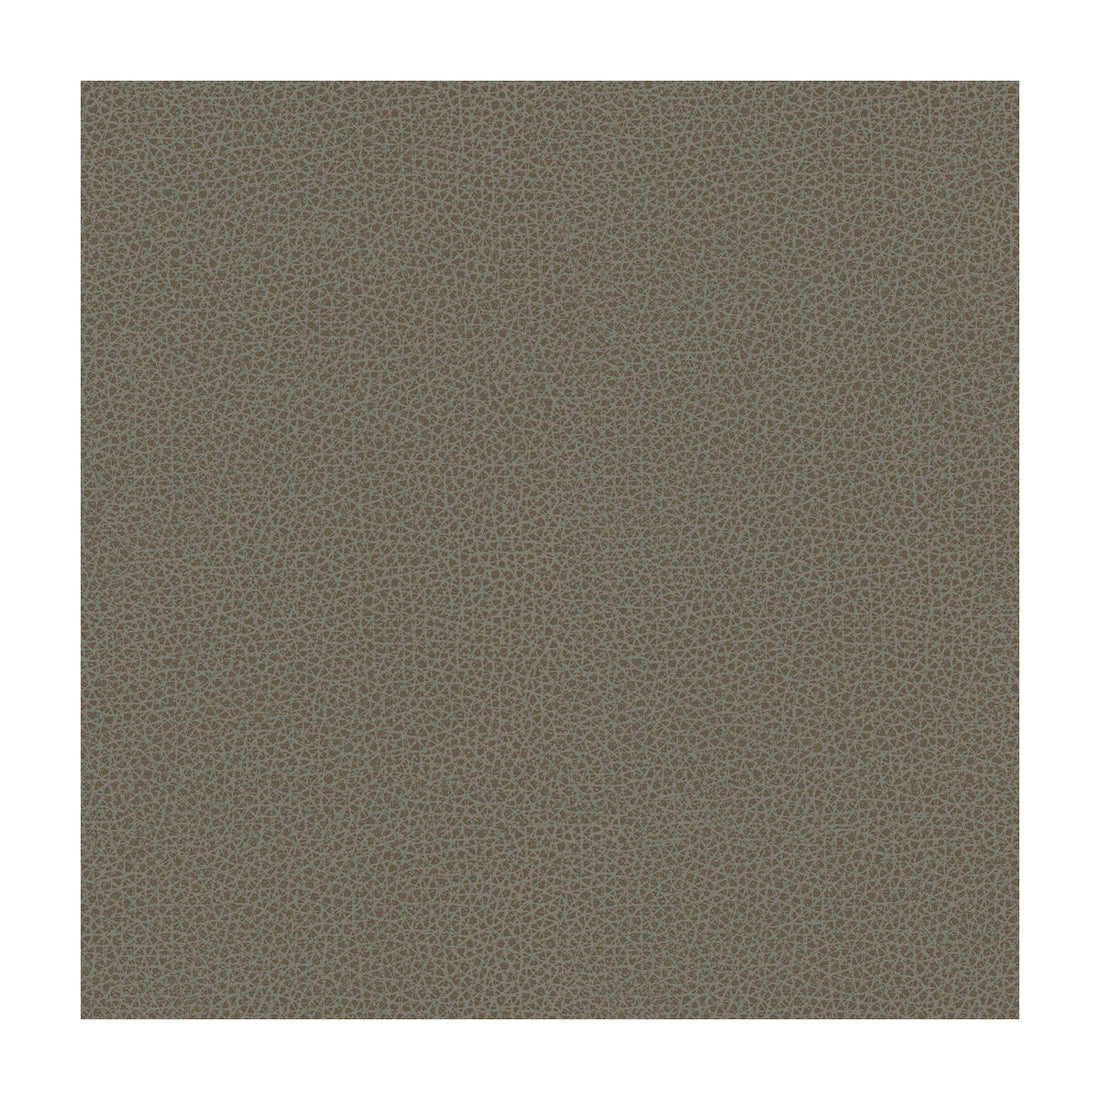 Kravet Design fabric in rigel-11 color - pattern RIGEL.11.0 - by Kravet Design